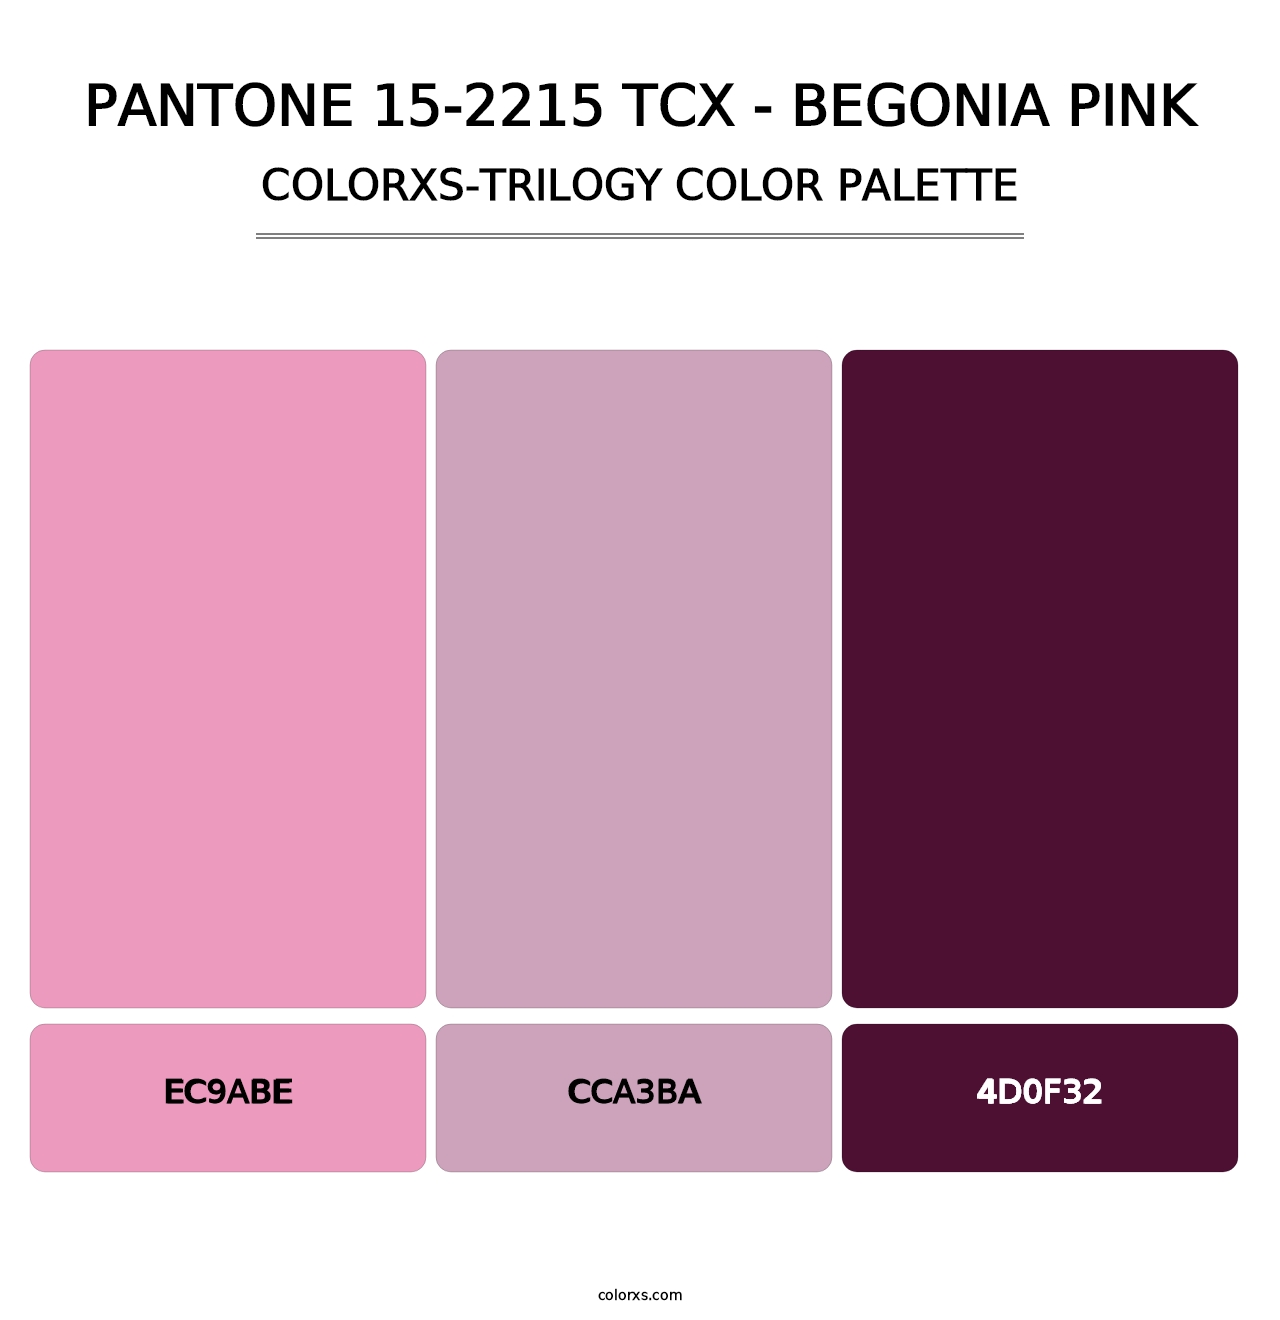 PANTONE 15-2215 TCX - Begonia Pink - Colorxs Trilogy Palette